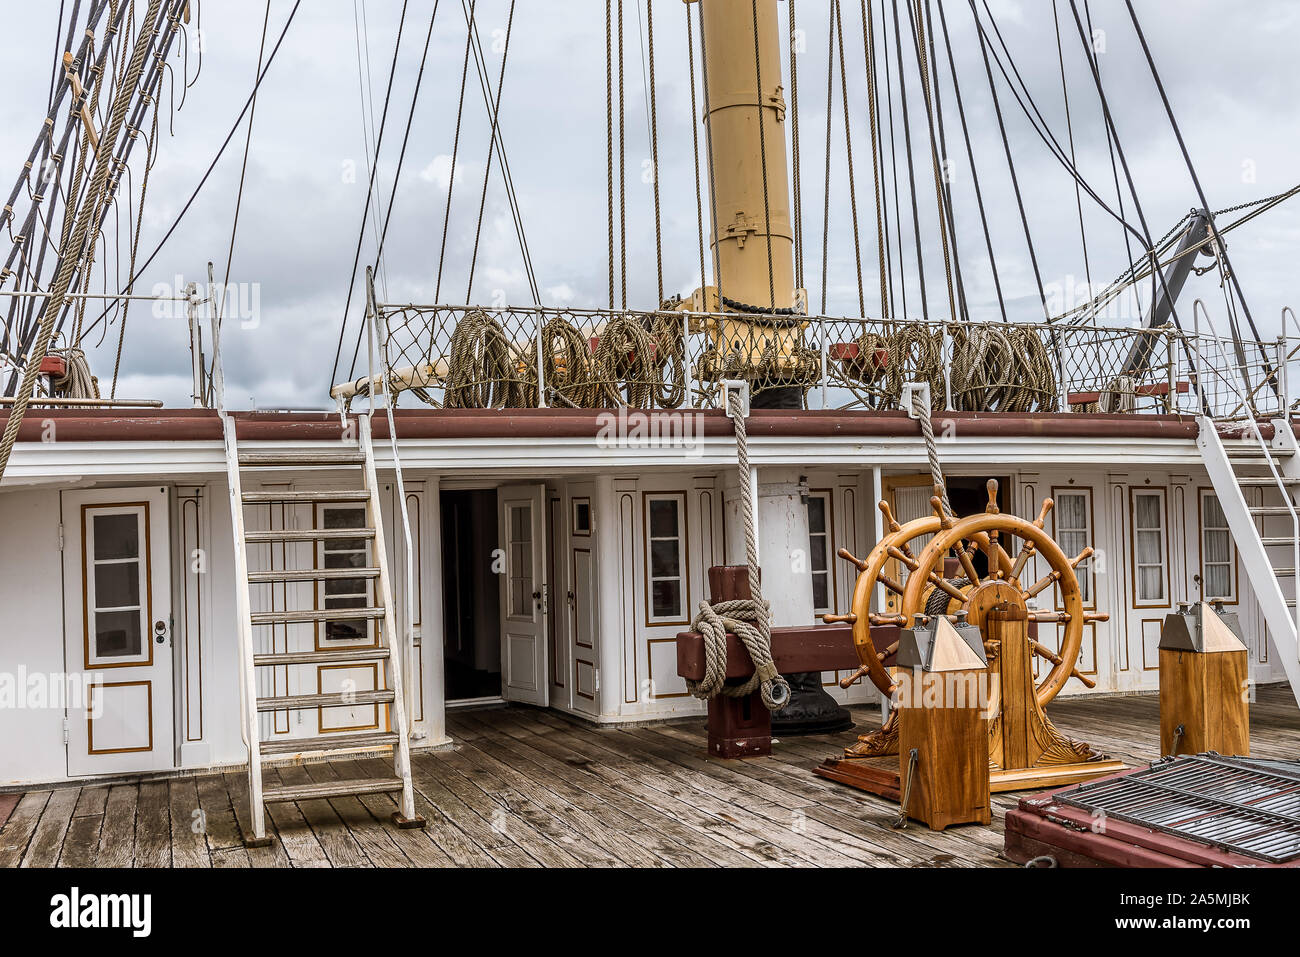 Das obere Deck auf der Fregatte Jylland mit Lenkrad und Saling rig, Ebeltoft, Dänemark, September 9, 2019 Stockfoto